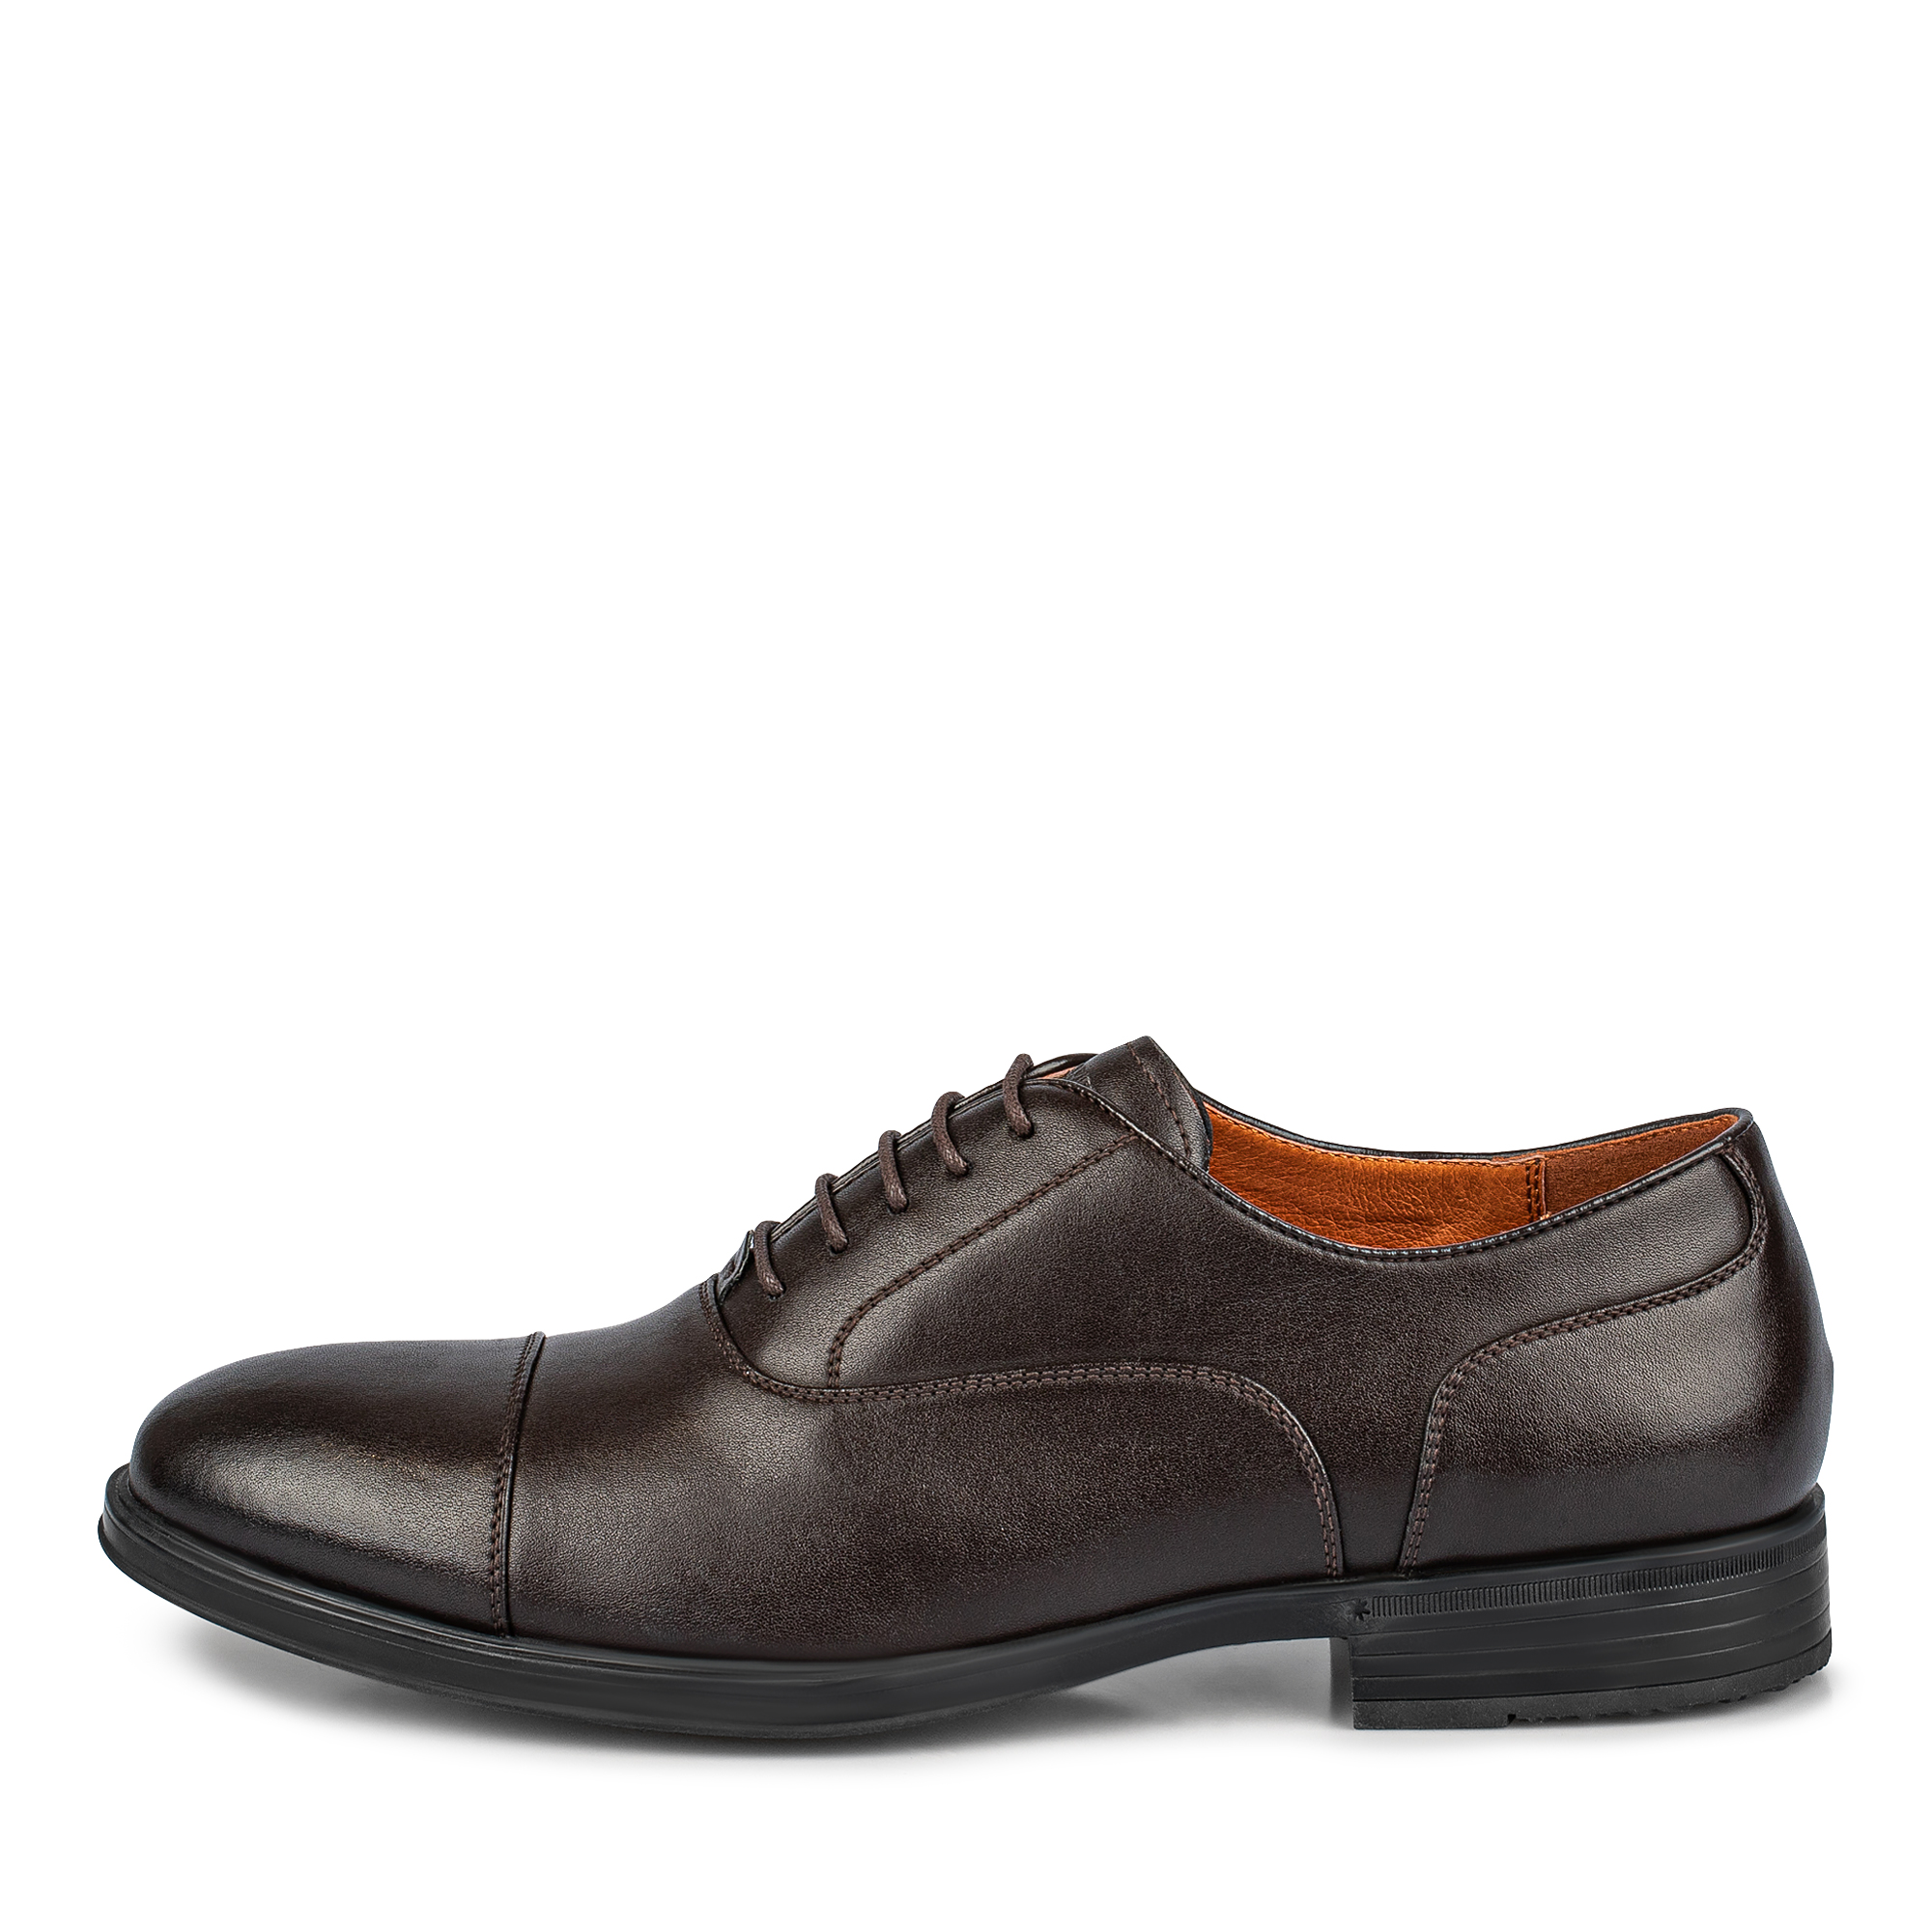 Туфли/полуботинки Thomas Munz 104-648A-1609, цвет коричневый, размер 44